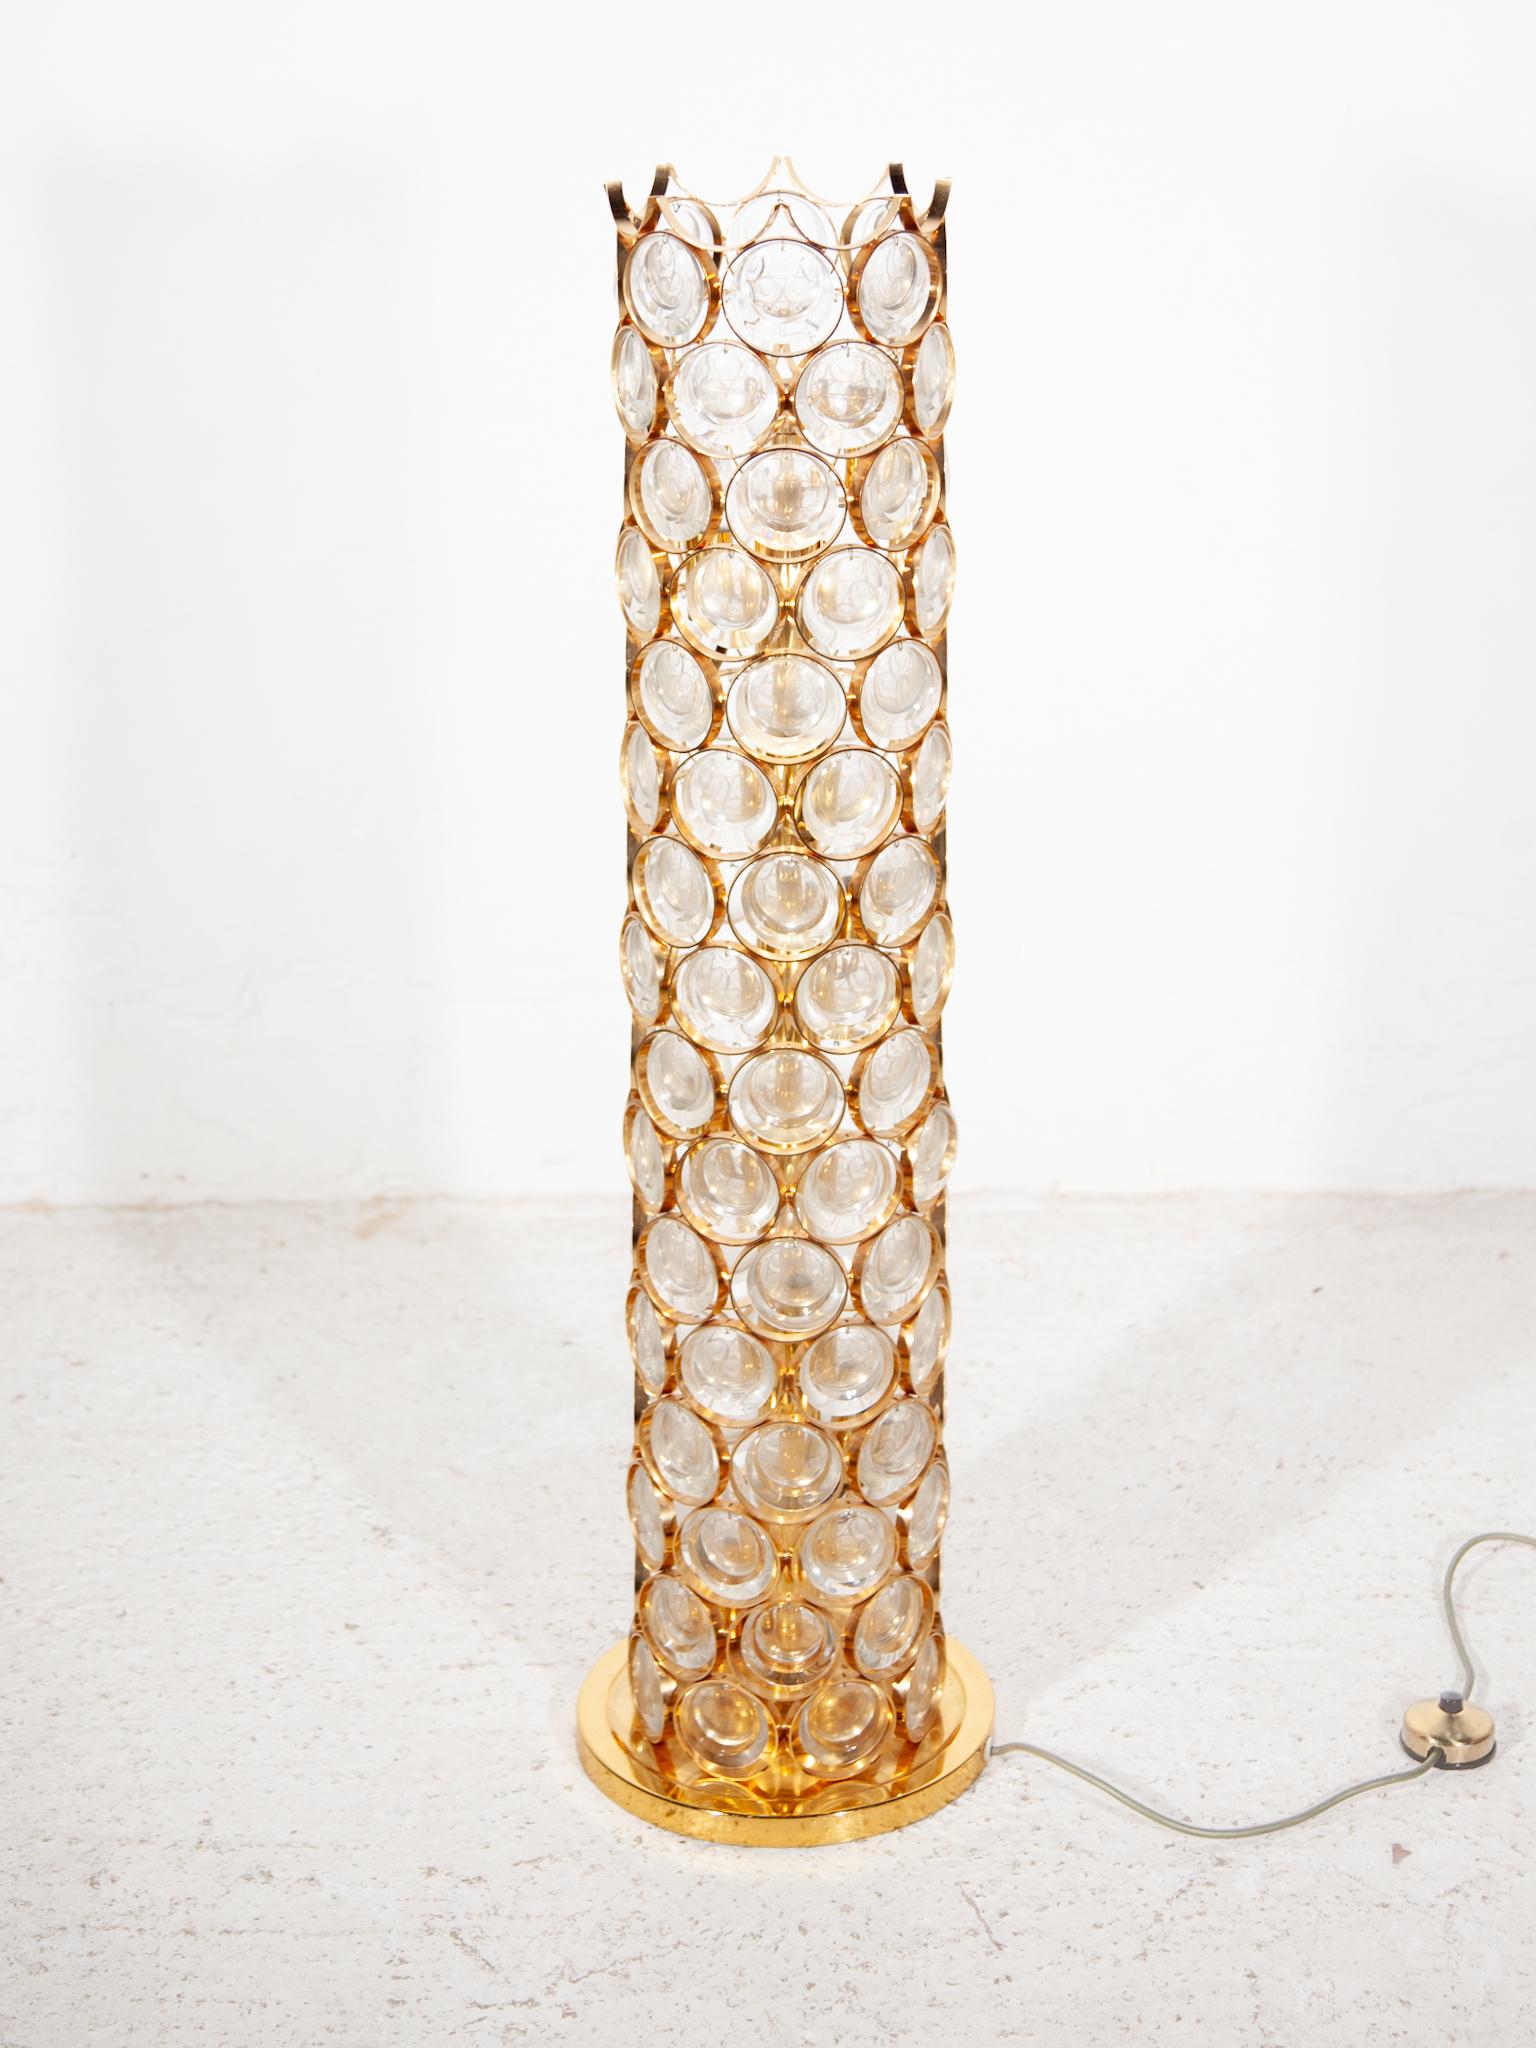 Très rare lampadaire Hollywood Regency conçu par Palwa, Allemagne, années 1970. Comprend une base en laiton doré, une tige et des abat-jours superposés avec des anneaux ronds dorés et des disques de cristal clair facettés suspendus.

10 douilles E14